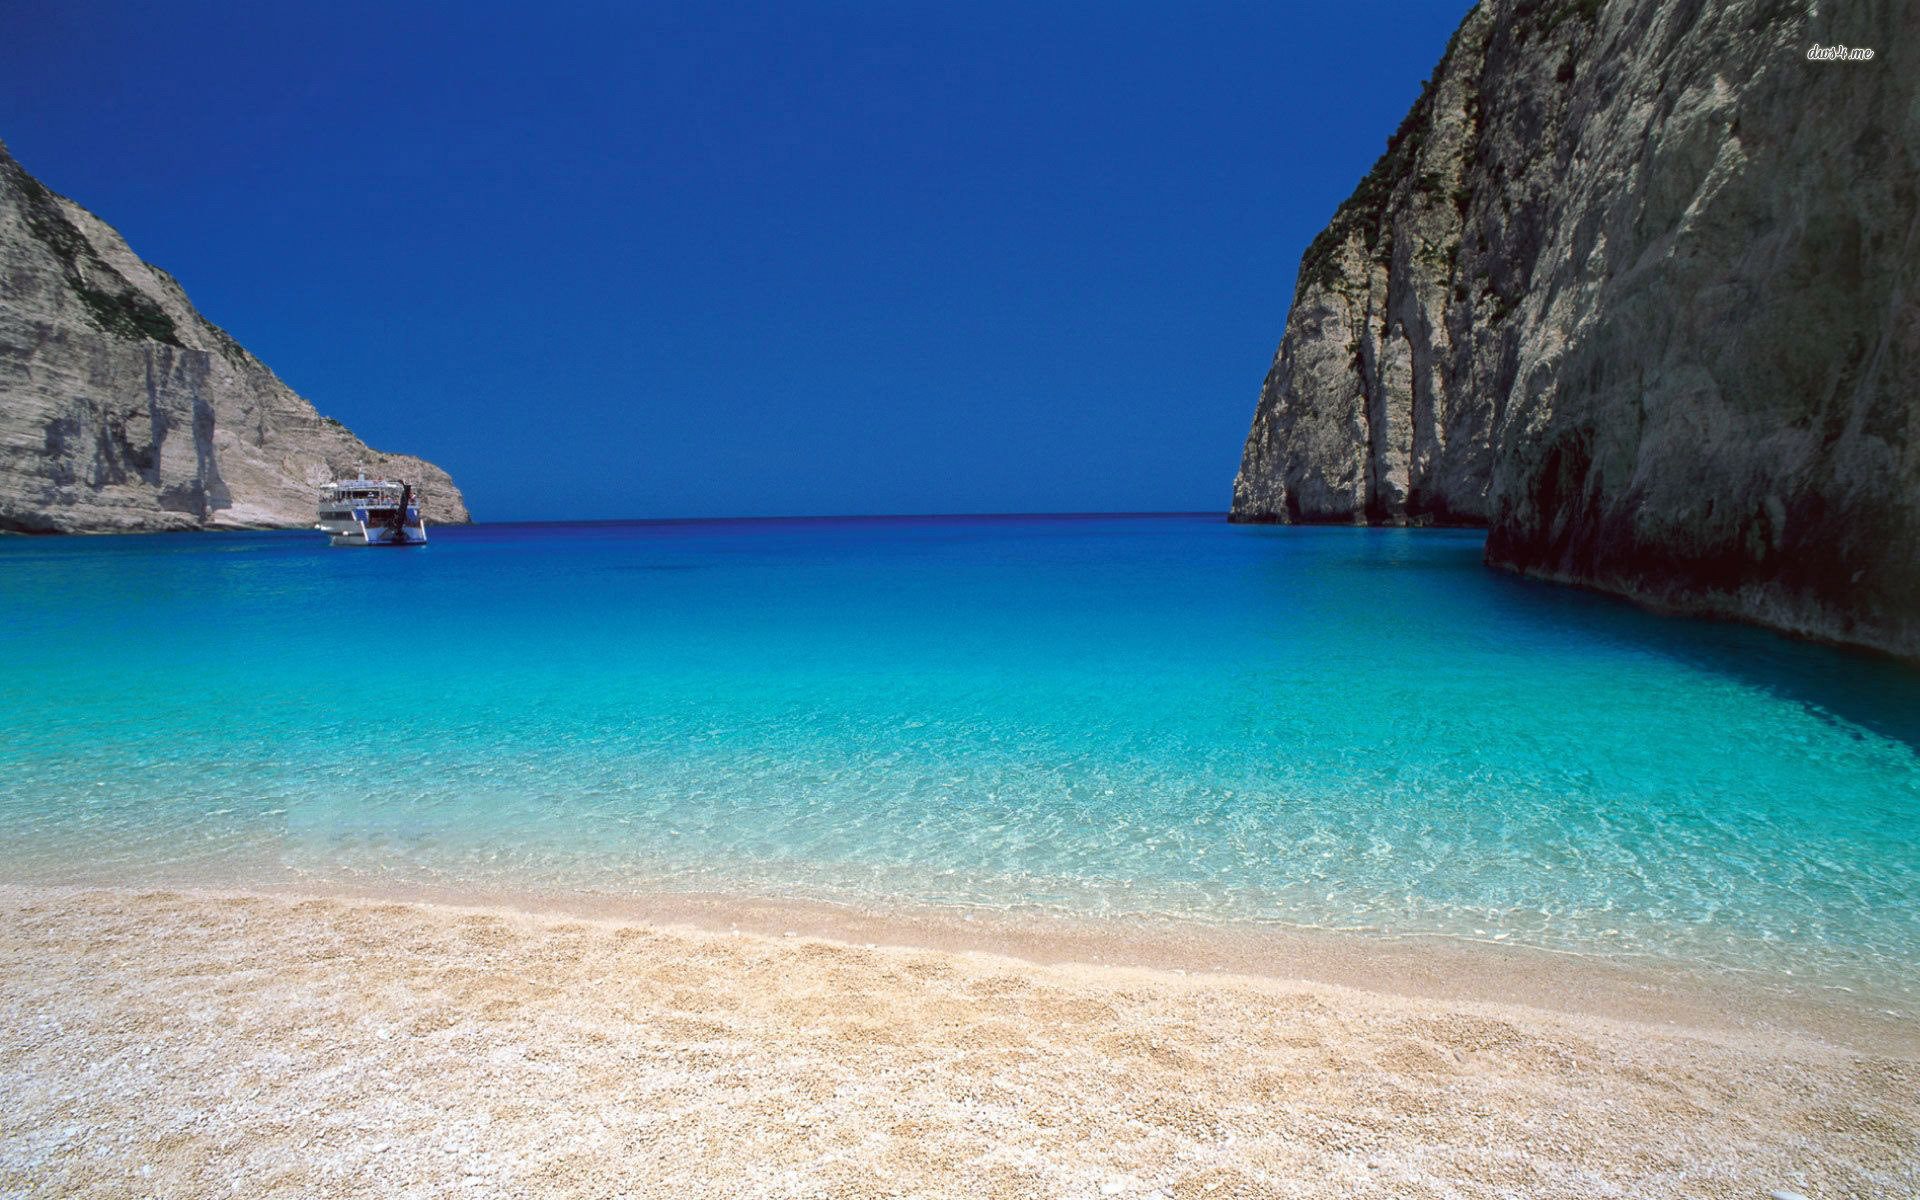 Είδε ο Γερμαναράς γαλάζια ελληνική παραλία και ξέχασε πως έγραφε την κάθε μ@@@κία